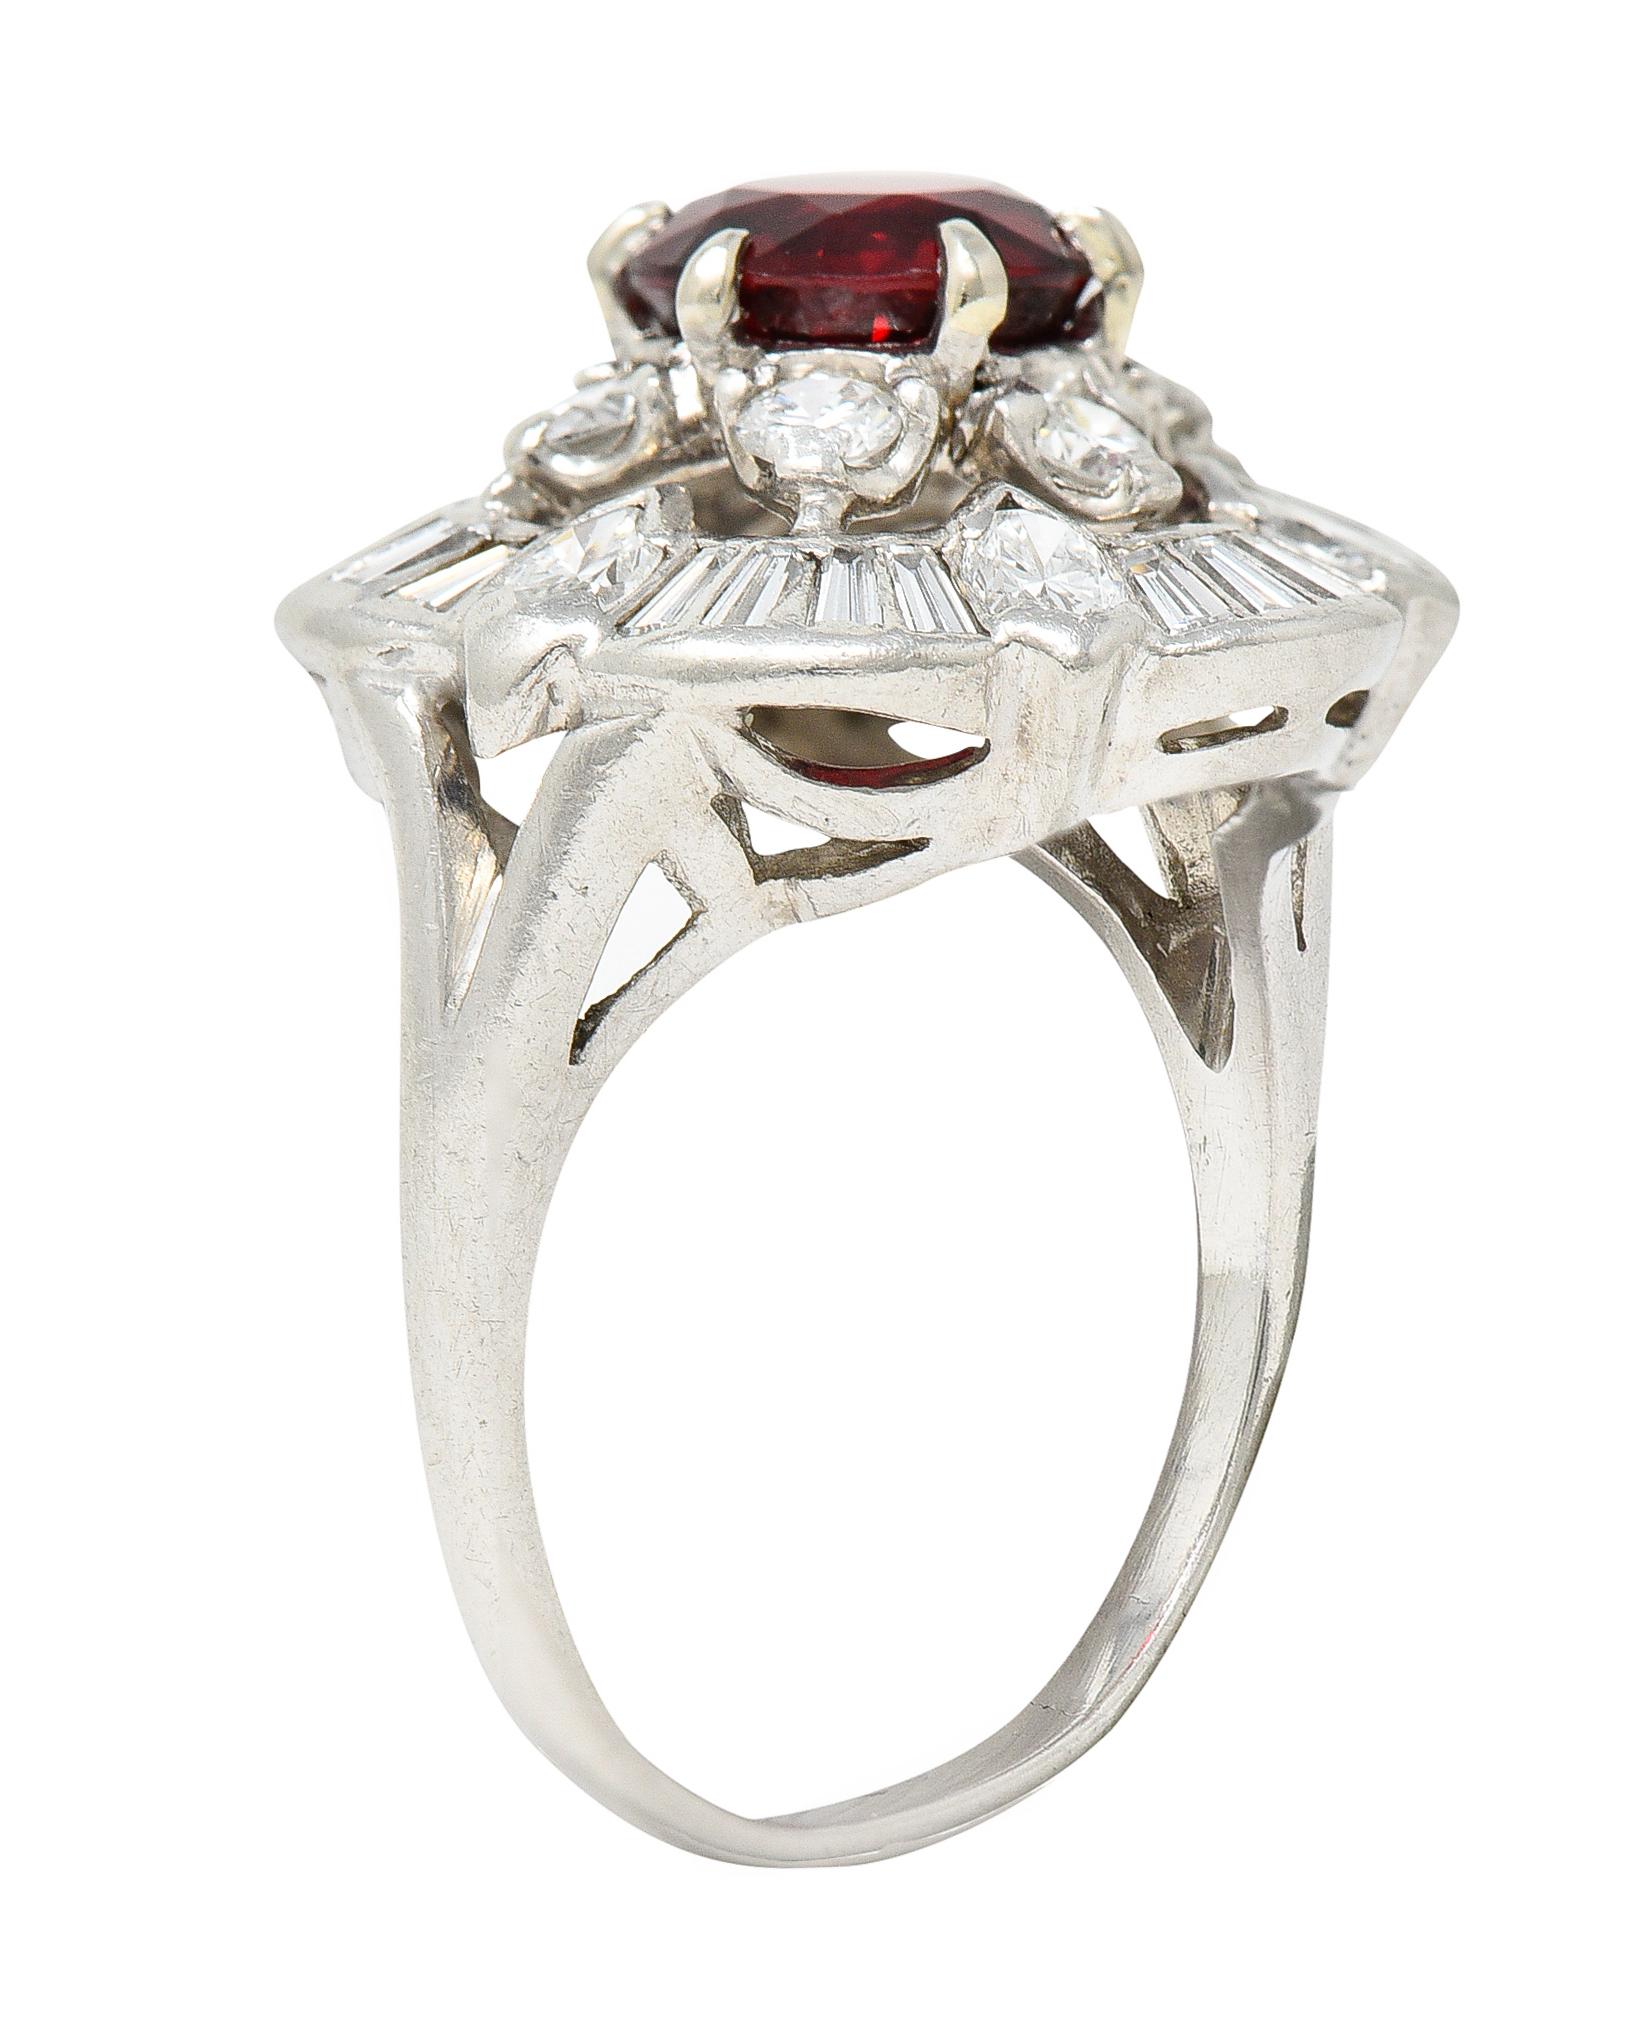 Au centre, un spinelle rond pesant 1,52 carats - naturel et de couleur rouge vif. Entouré d'un double halo de diamants. Le halo intérieur est une grappe florale composée de diamants ronds de taille brillant. Le halo extérieur est composé de diamants